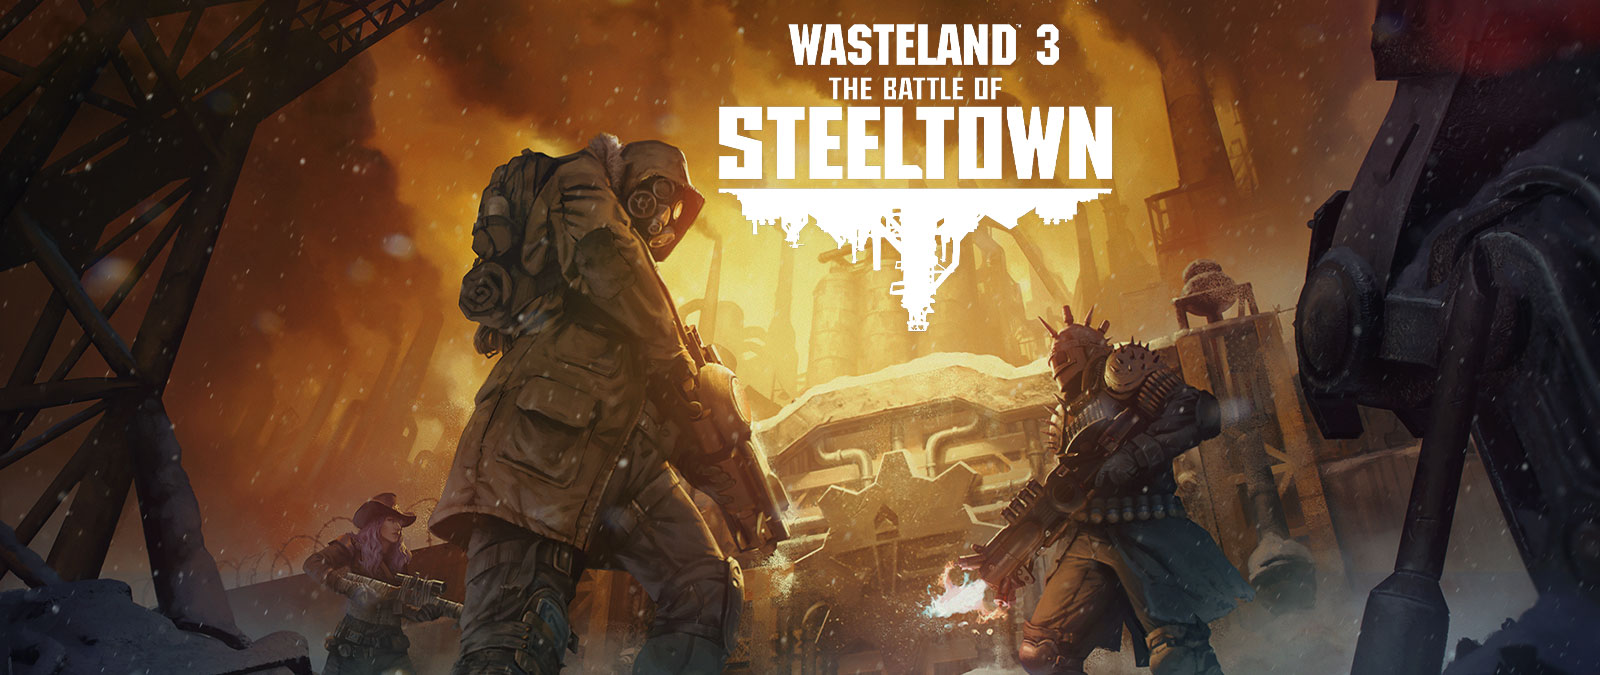 Wasteland 3: Bitwa o Steeltown. Trzy postacie z broniami i zbrojami przed drzwiami na industrialnym tle